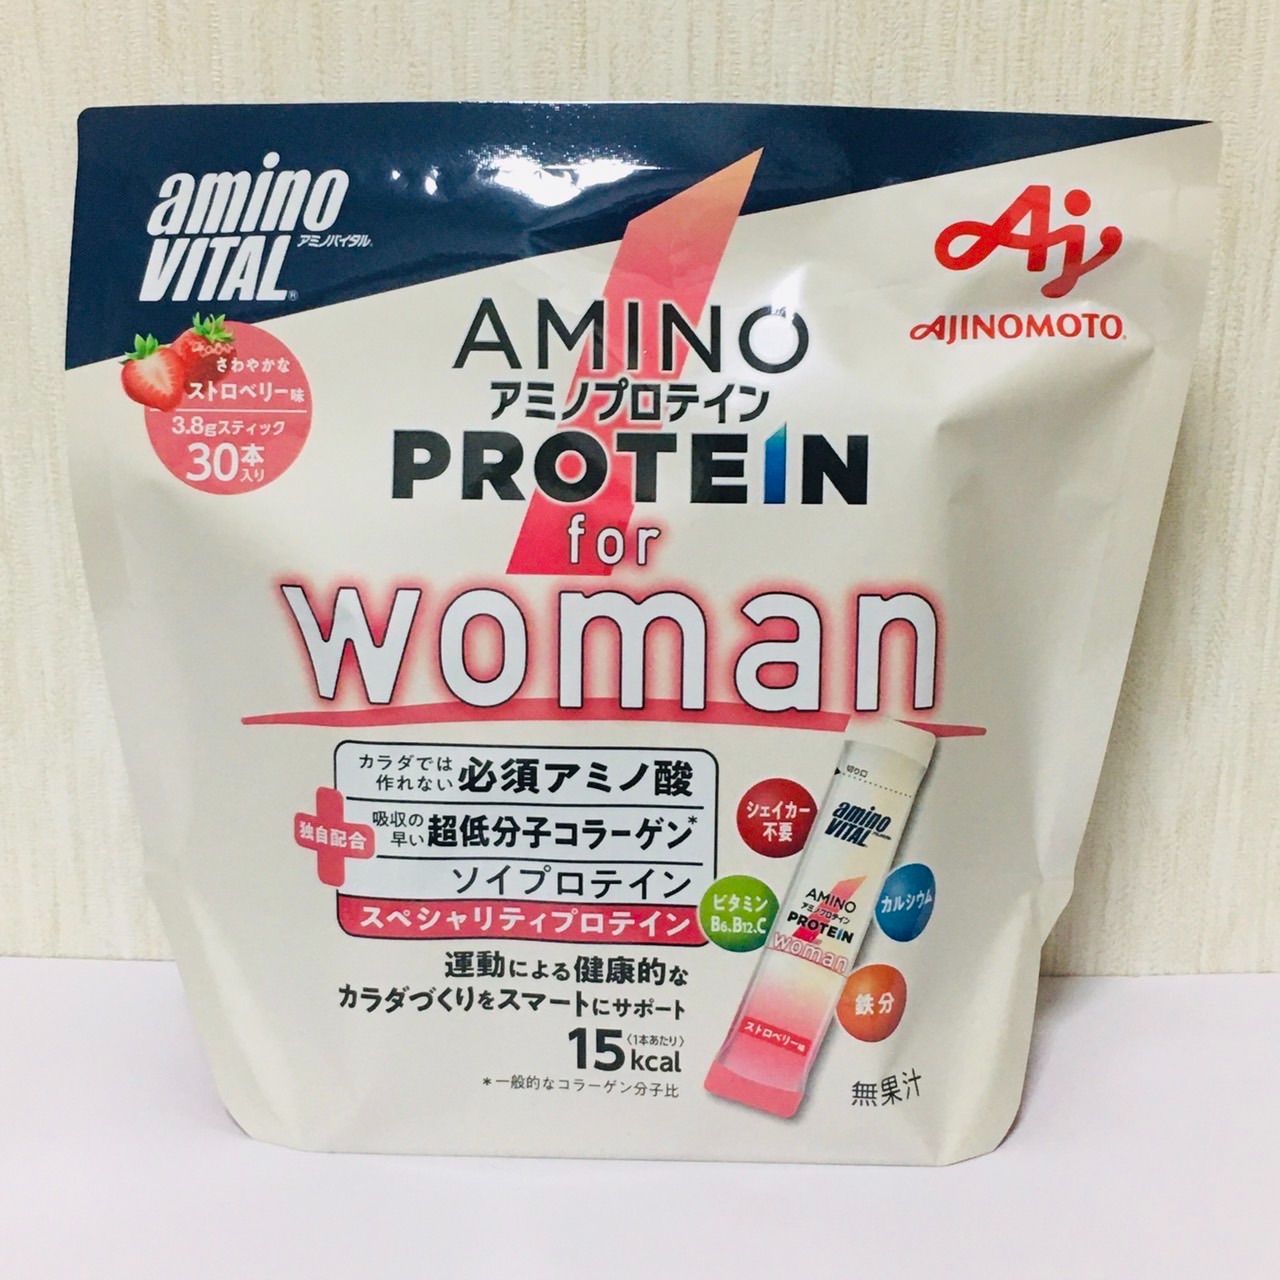 全品送料無料】 アミノバイタル アミノプロテイン for 30本入 Woman (1個) ストロベリー味 3.8g× プロテイン 